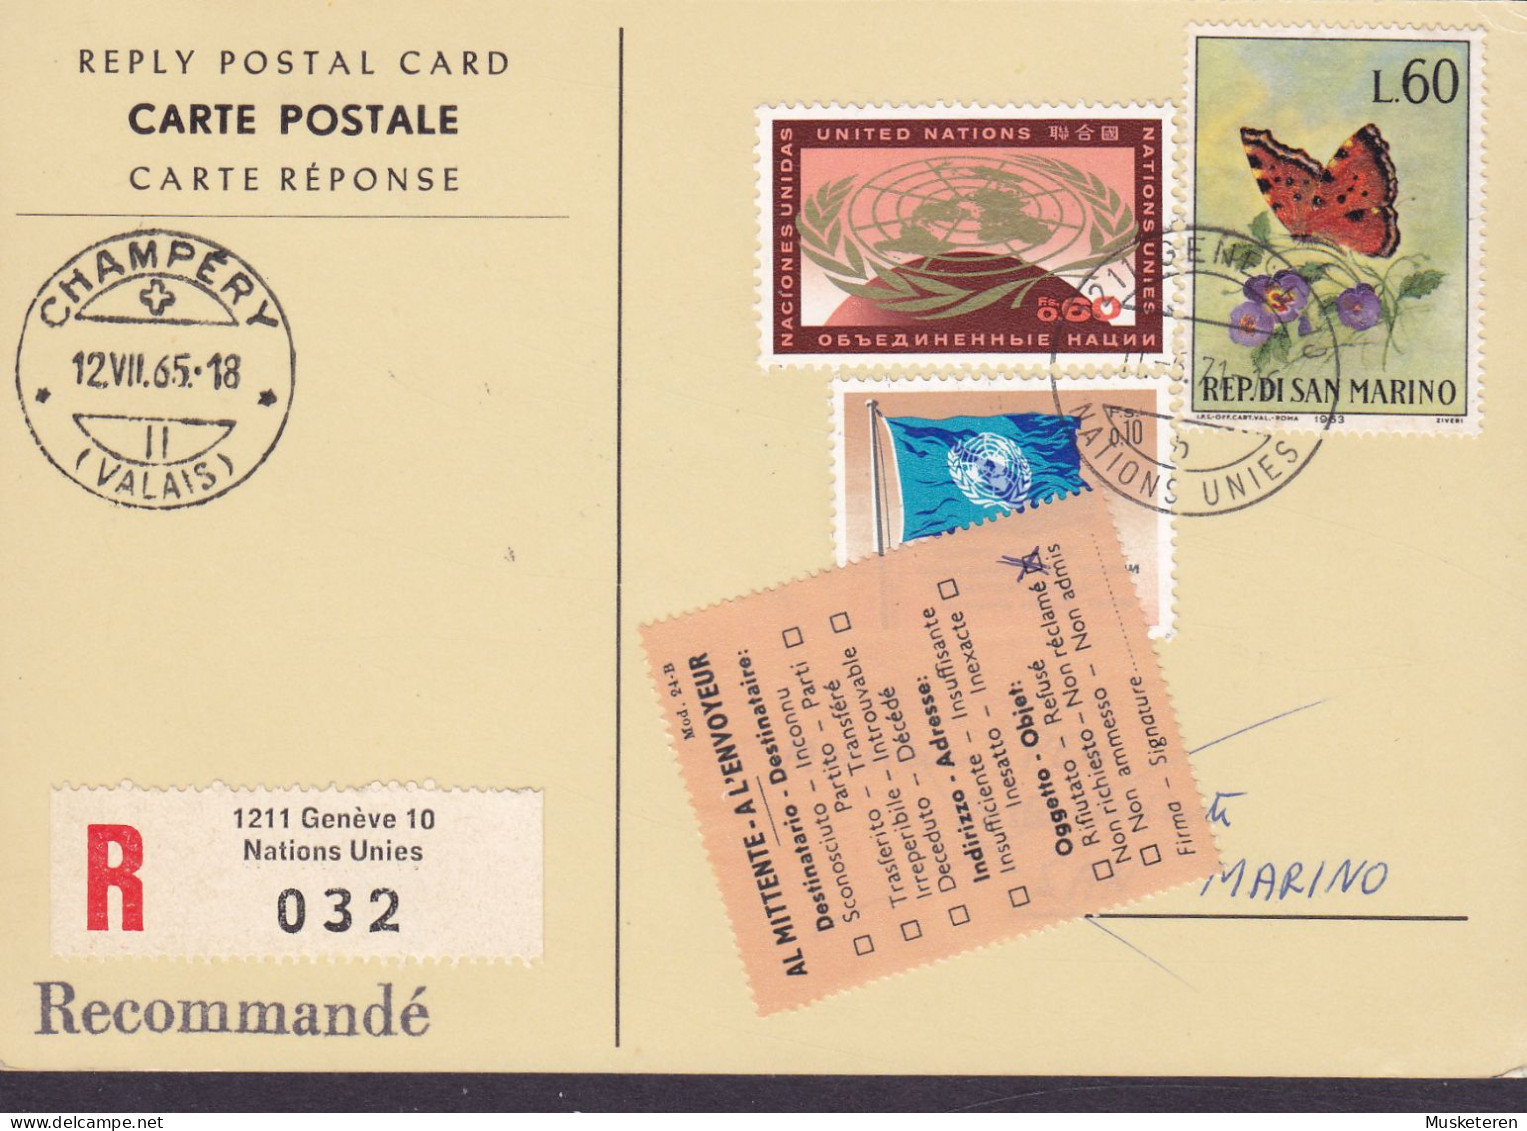 United Nations Reply Postal Card Recommandé Label GENÉVE 1971 SAN MARINO 'Non Réclamé' Vignette Butterfly Papillon - Storia Postale